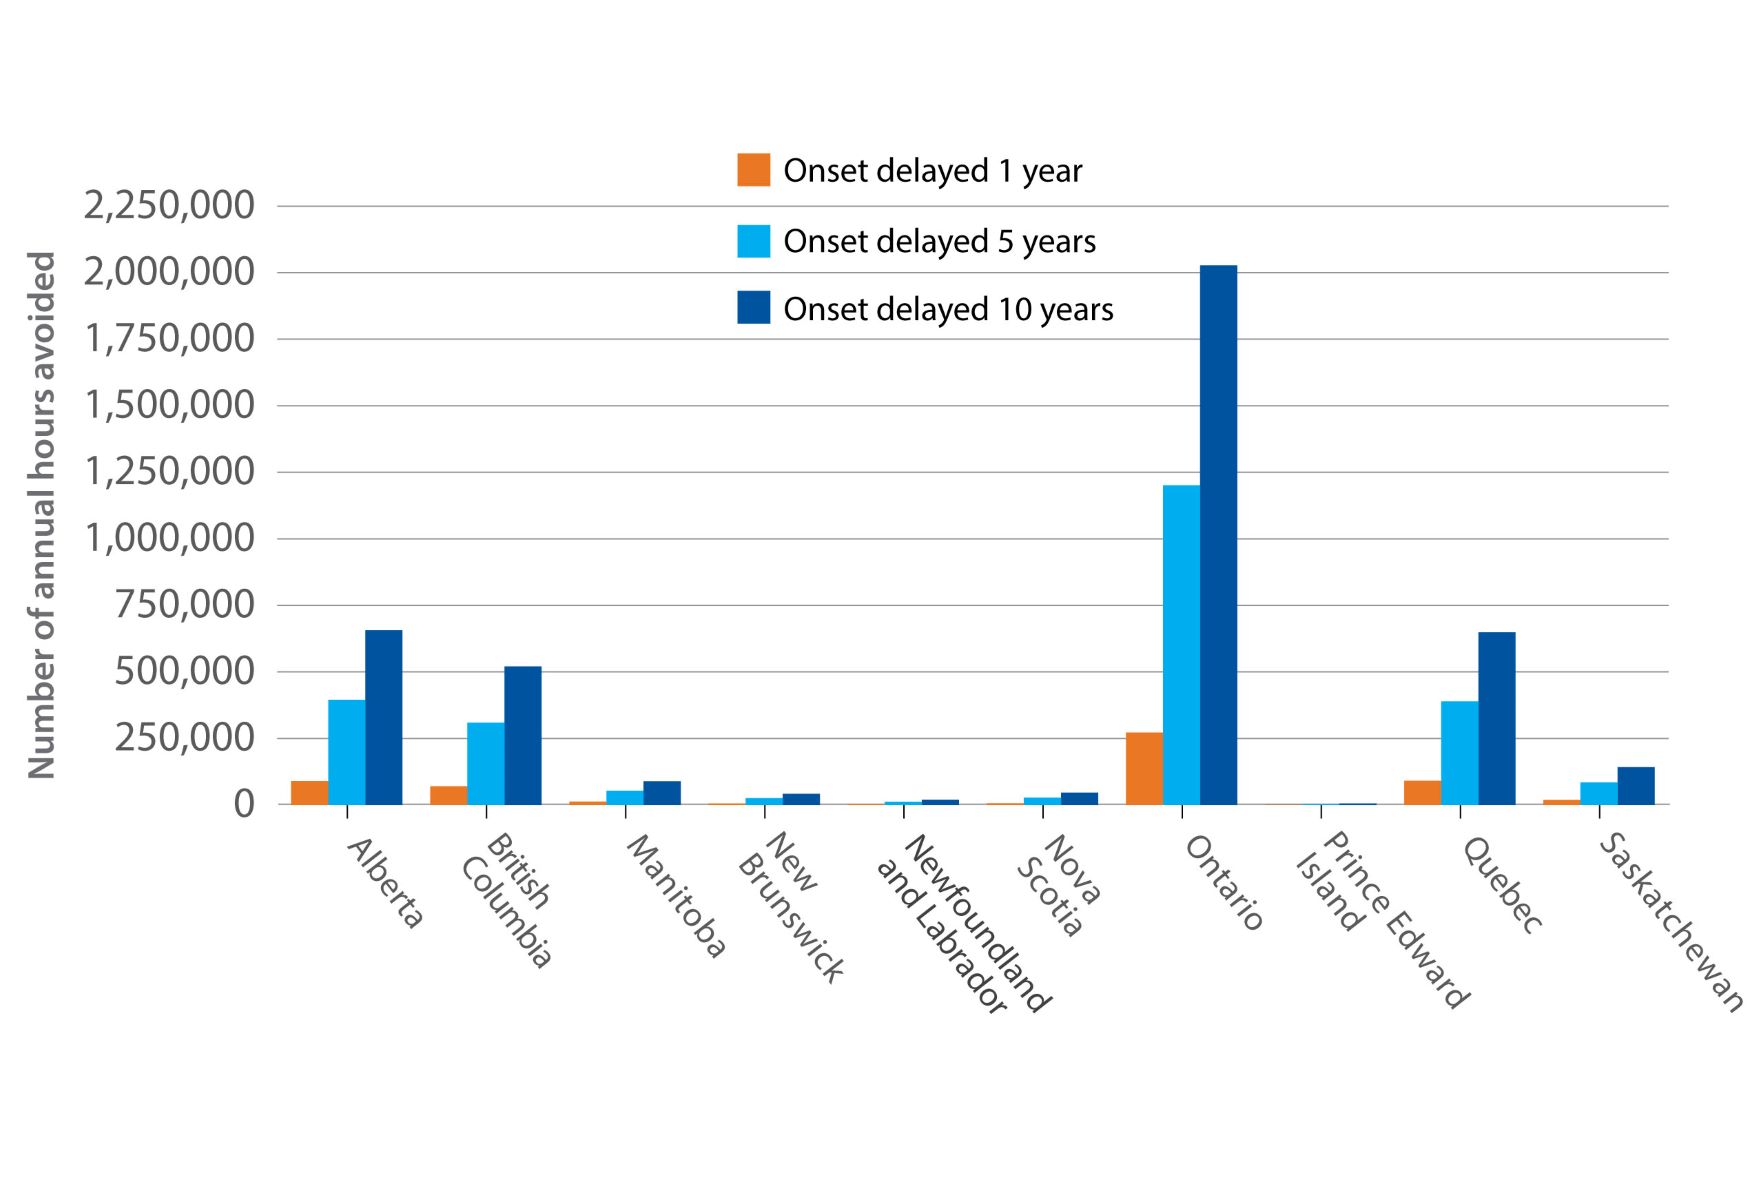 Figure 11. Reduction in informal caregiving needs in 2050